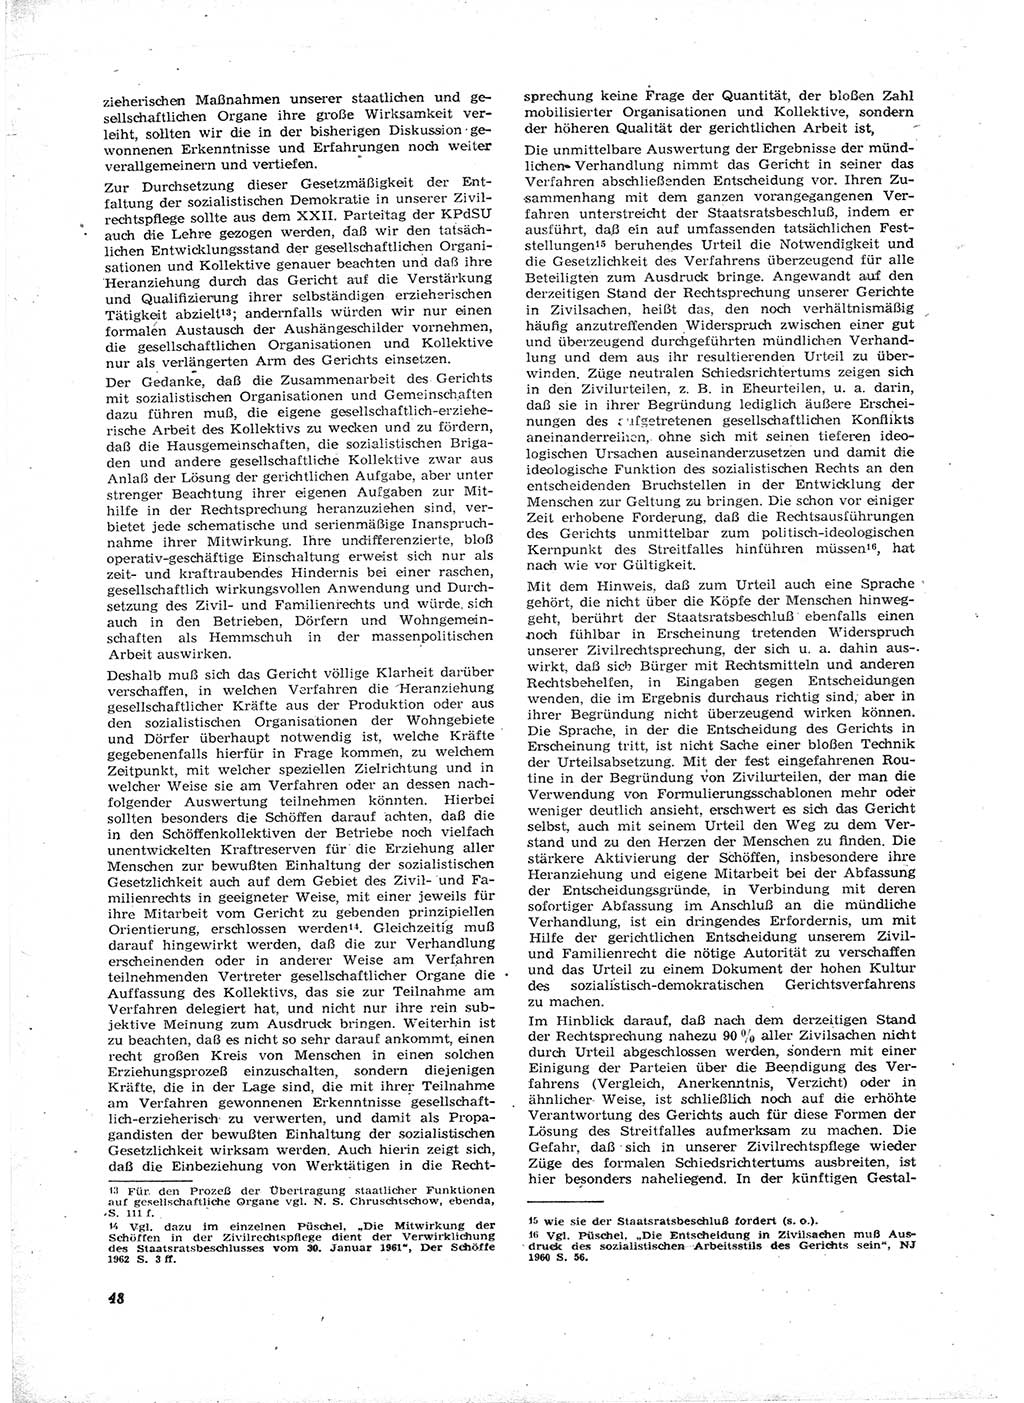 Neue Justiz (NJ), Zeitschrift für Recht und Rechtswissenschaft [Deutsche Demokratische Republik (DDR)], 16. Jahrgang 1962, Seite 48 (NJ DDR 1962, S. 48)